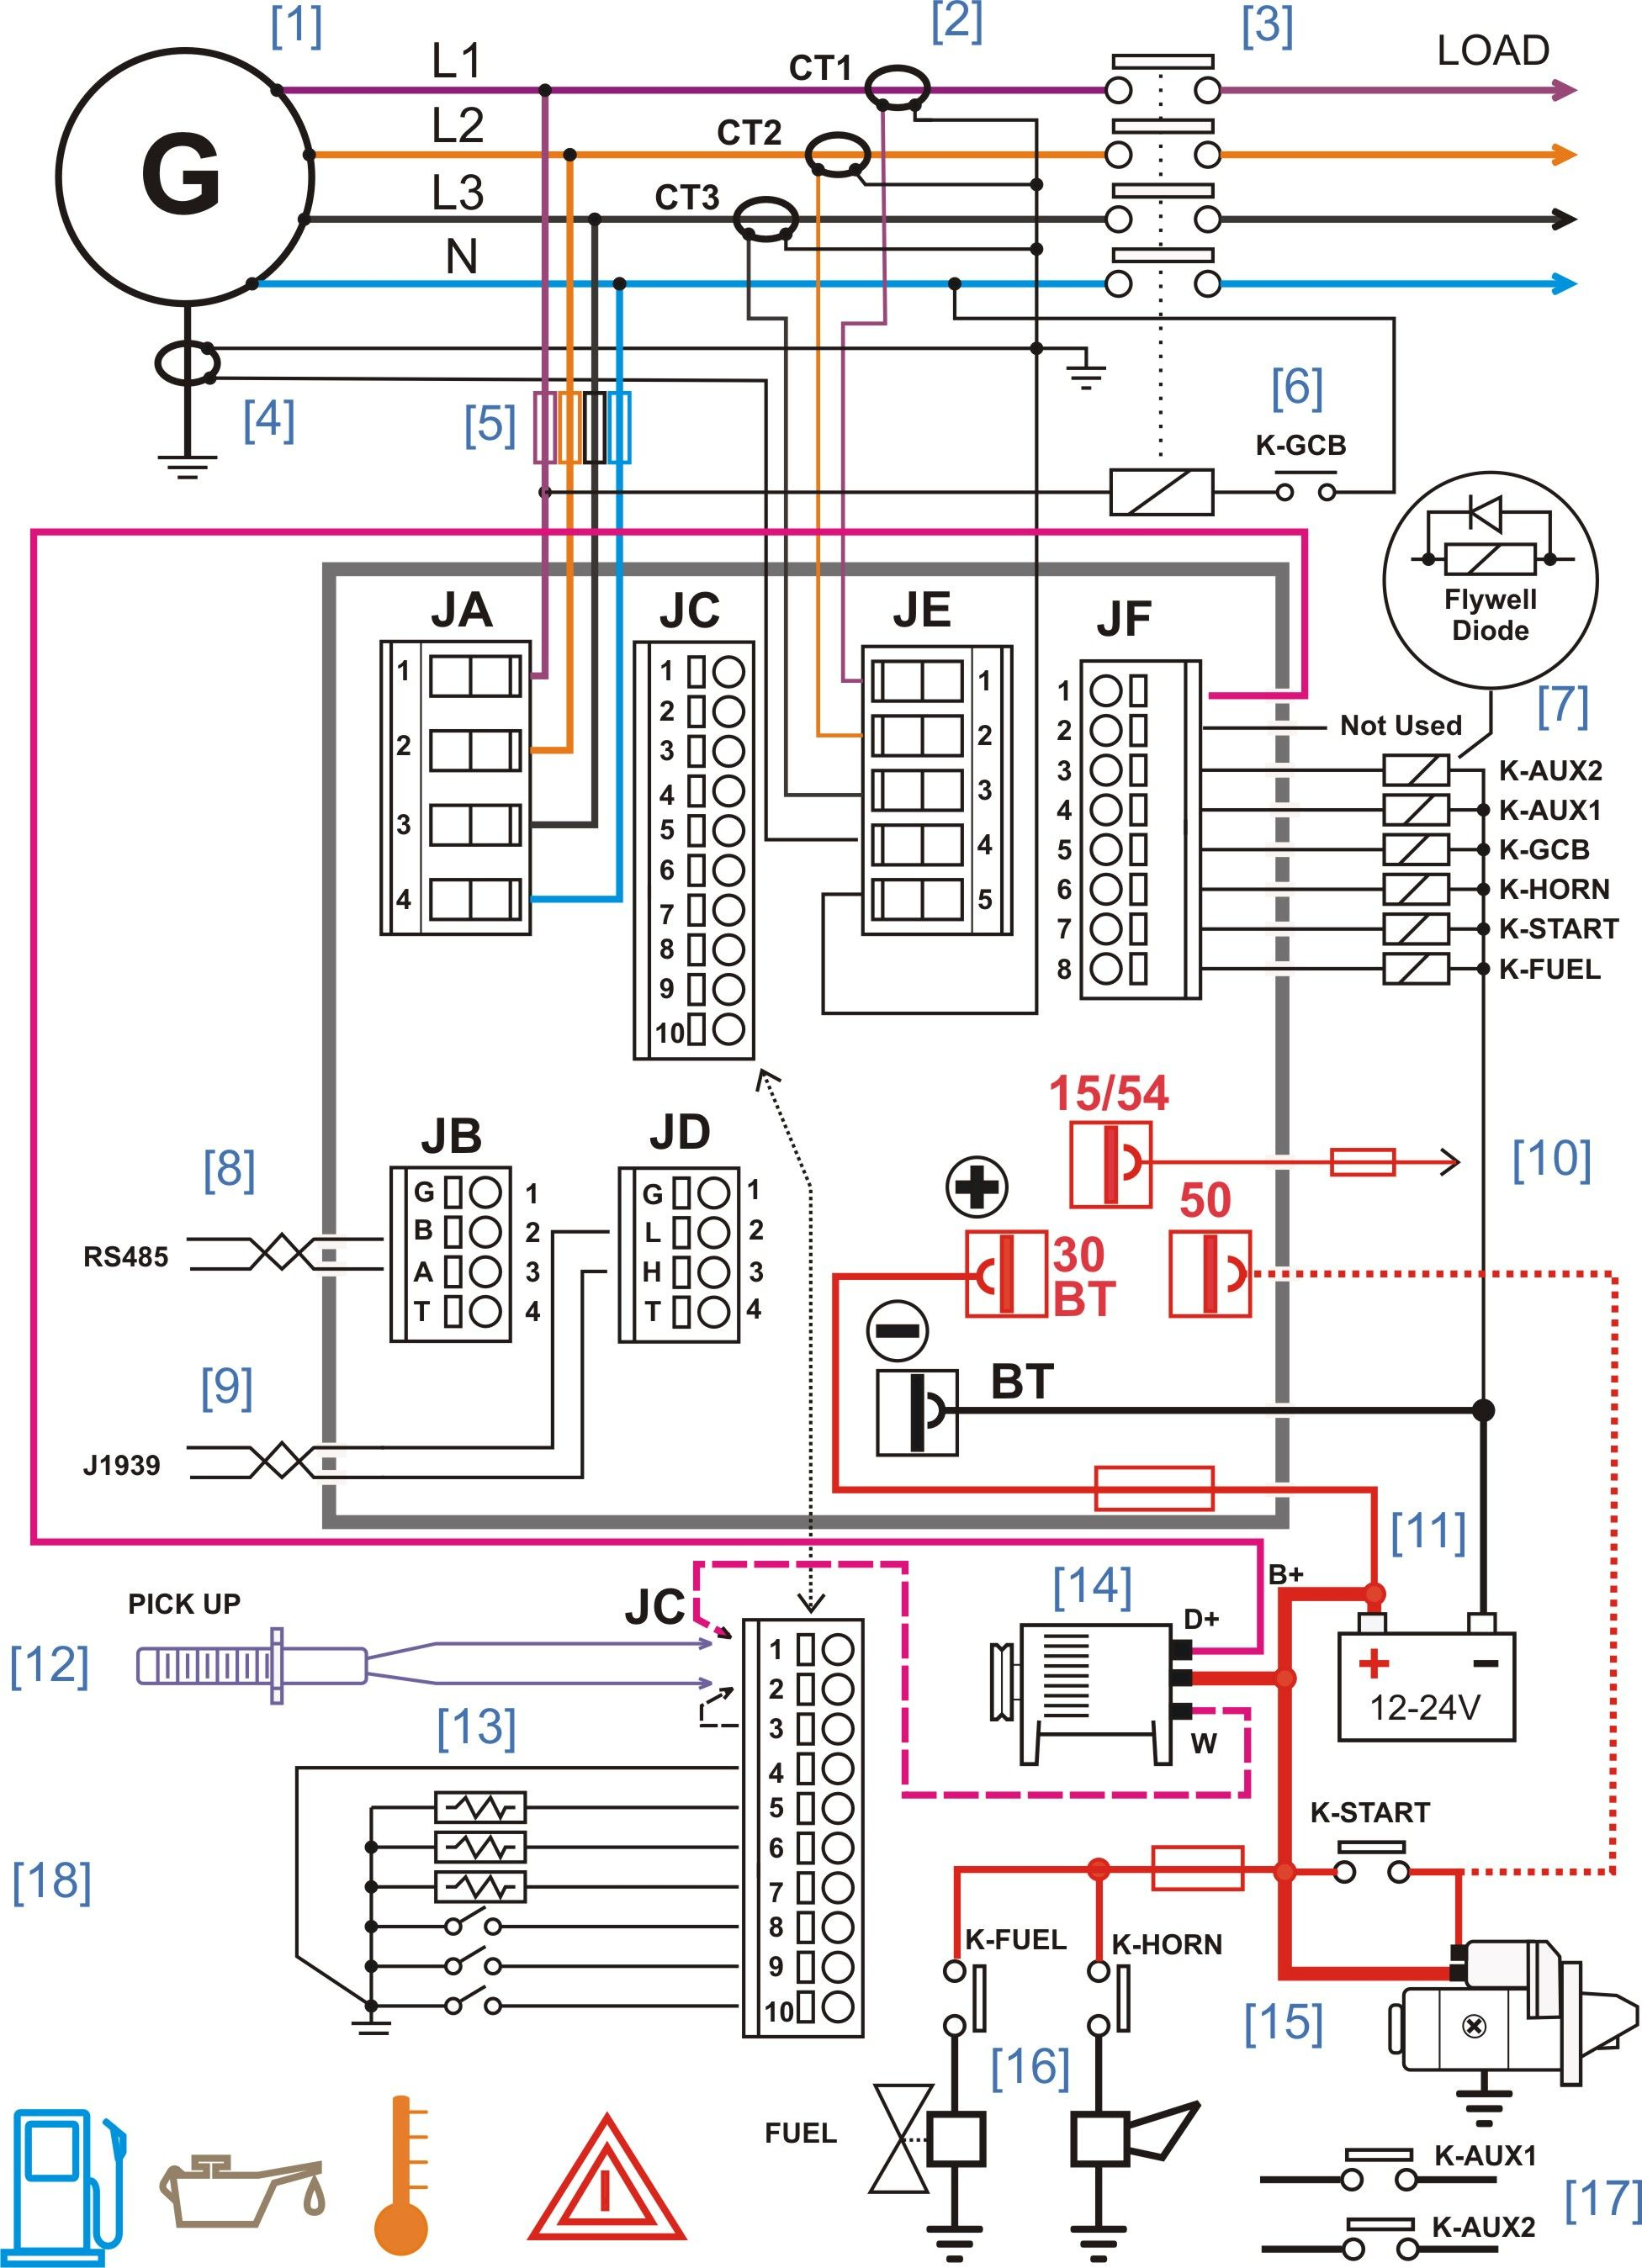 Generator Panel Wiring - Data Wiring Diagram Detailed - Solar Panel Wiring Diagram